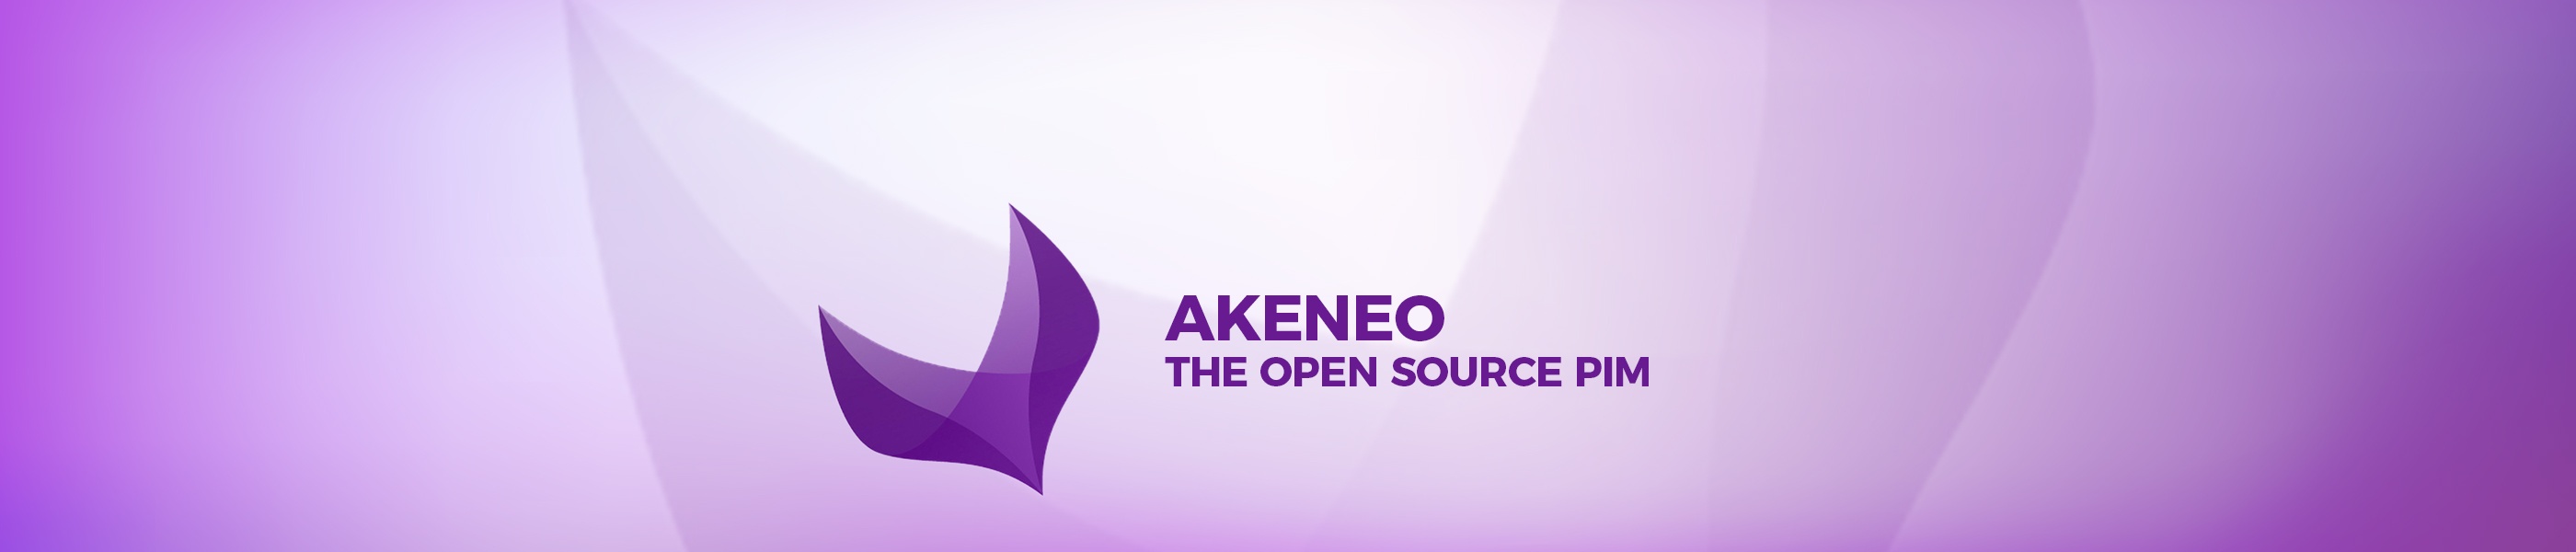 Akeneo PIM open - source สำหรับการประมวลผลข้อมูลผลิตภัณฑ์ส่วนกลาง